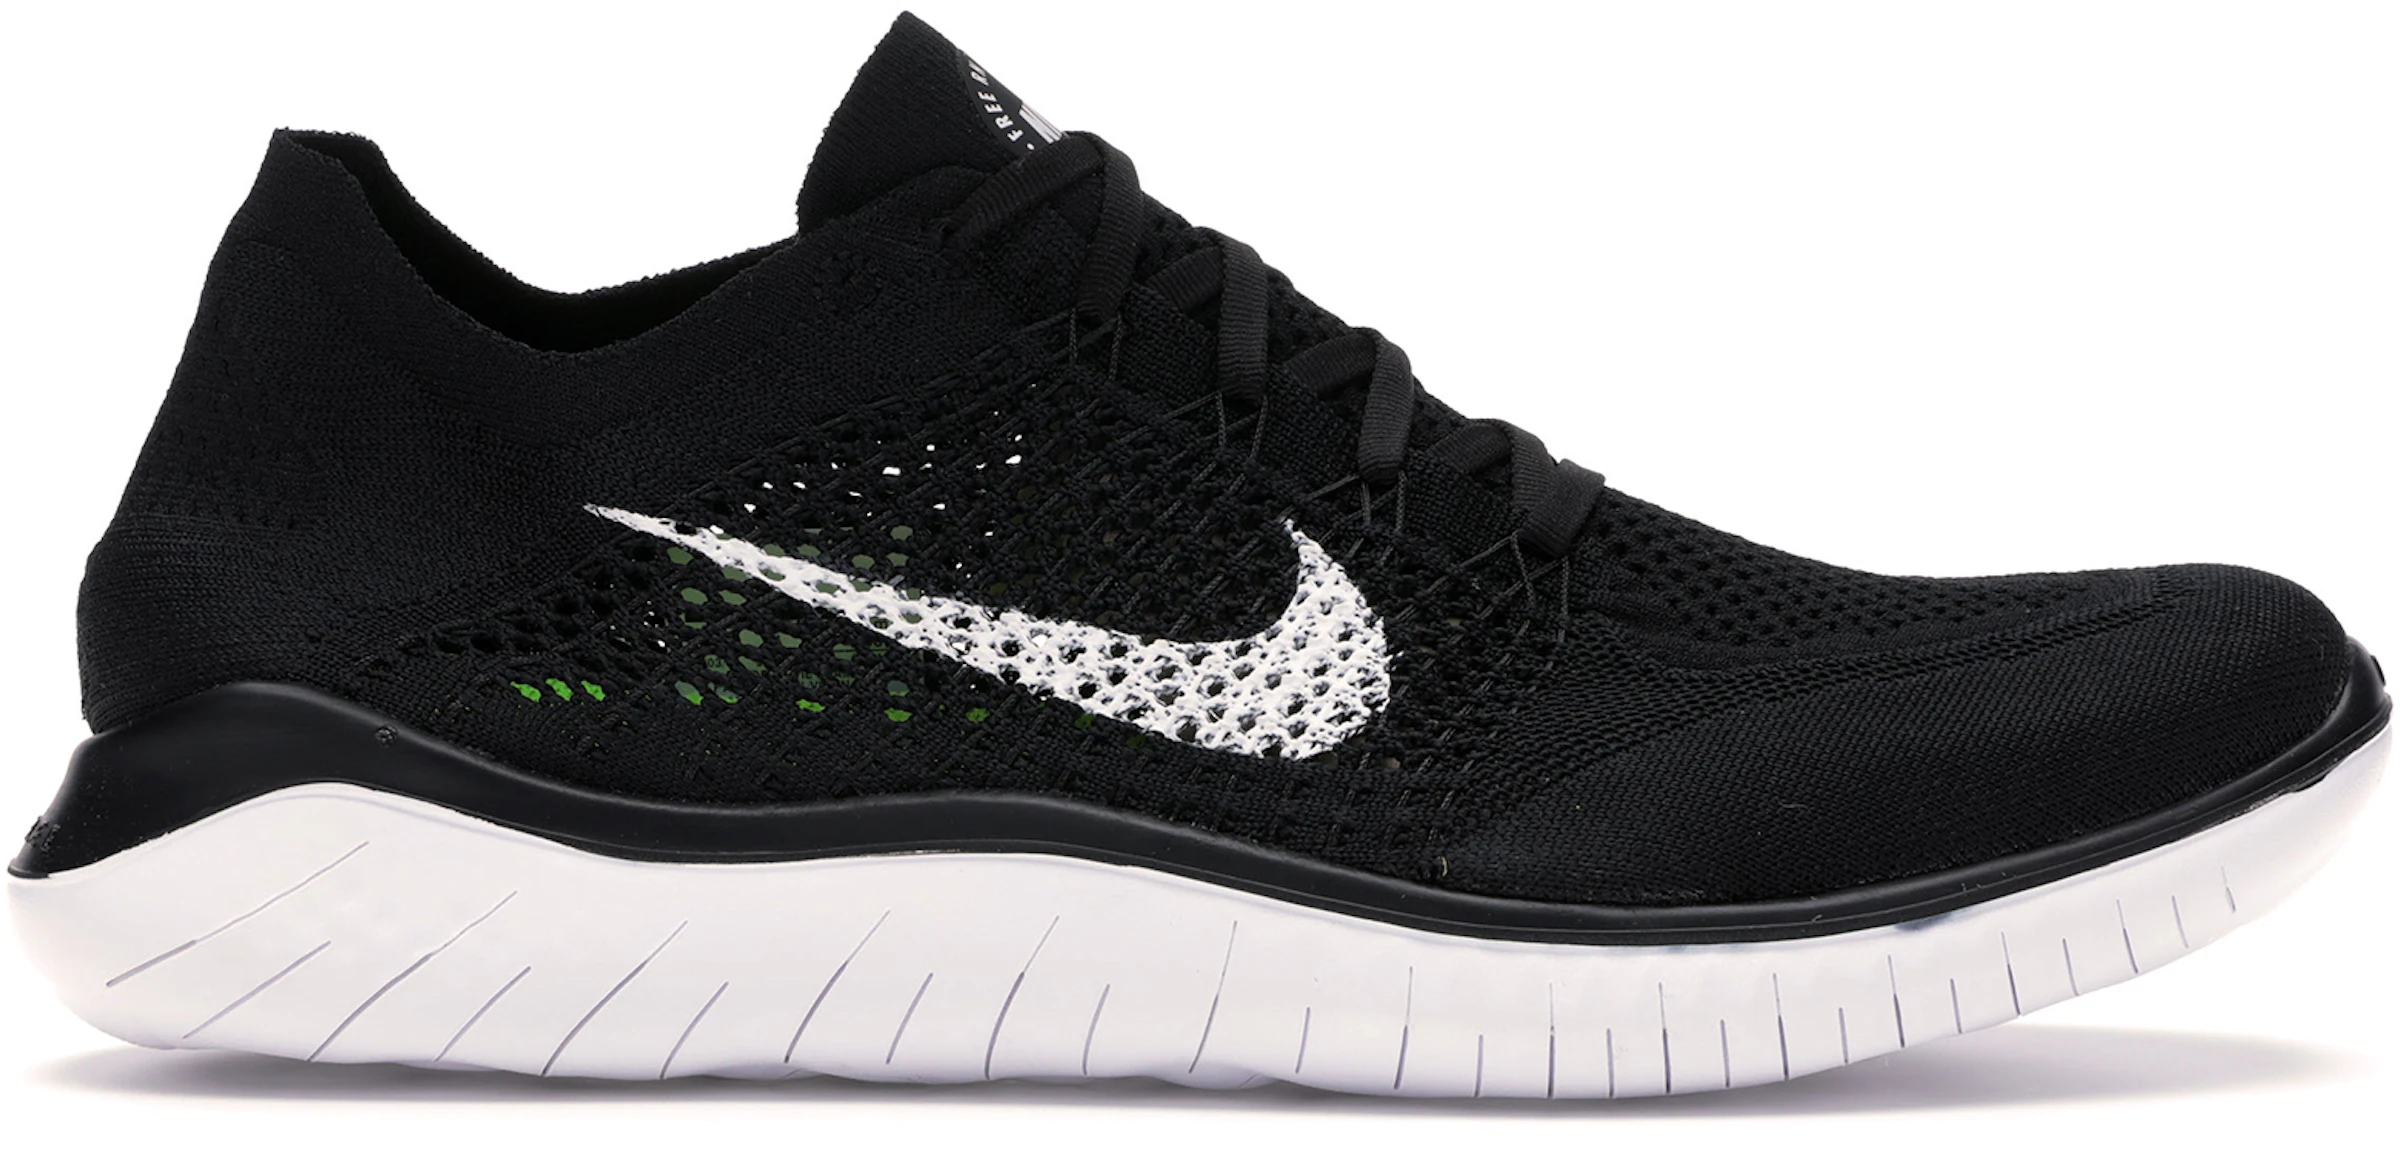 Compra Nike Other Running Size 14 Calzado y sneakers nuevos